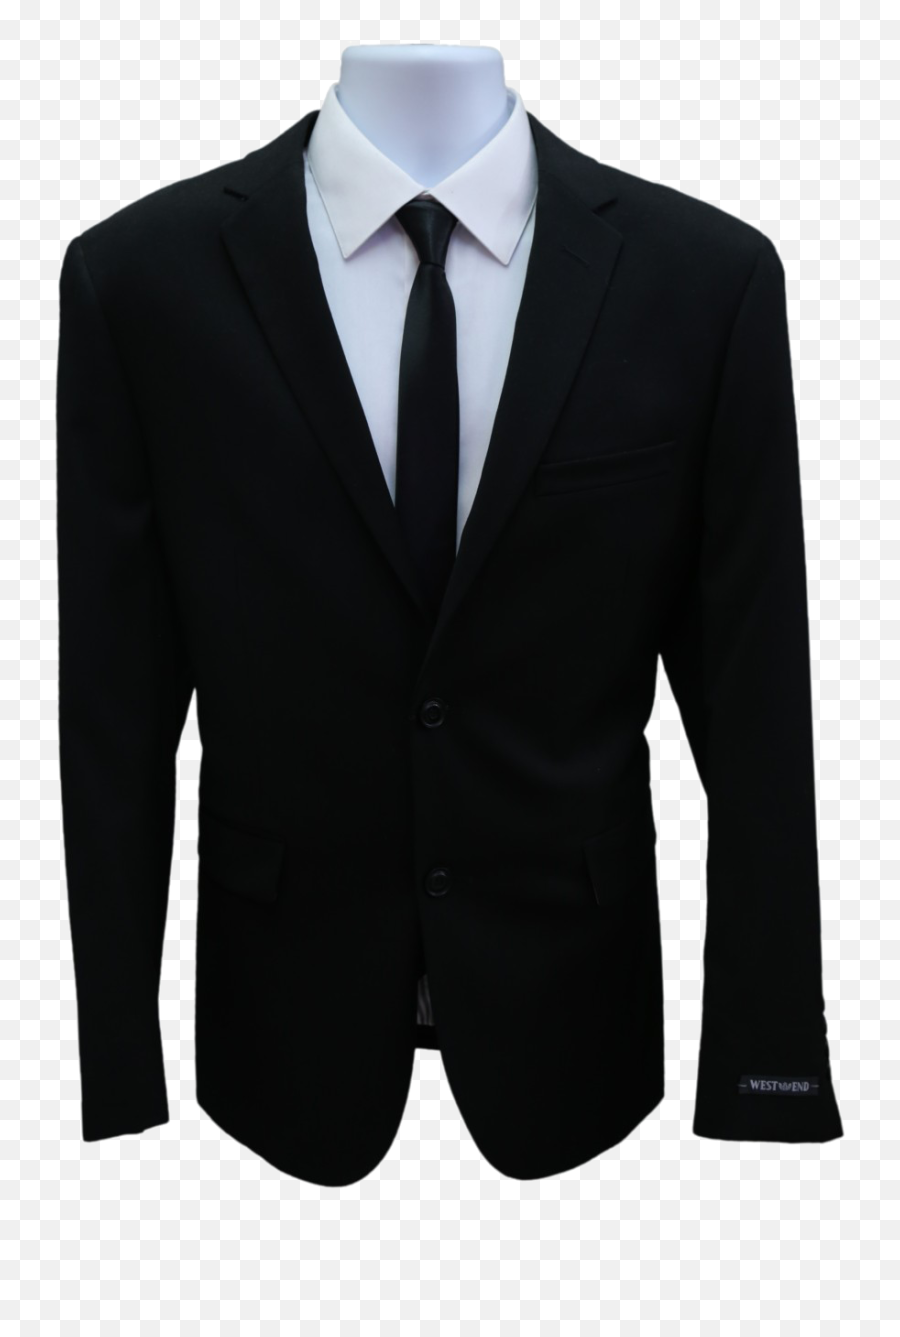 Black Suit Png Image Background - Formal Suit Transparent Background,Suit Png